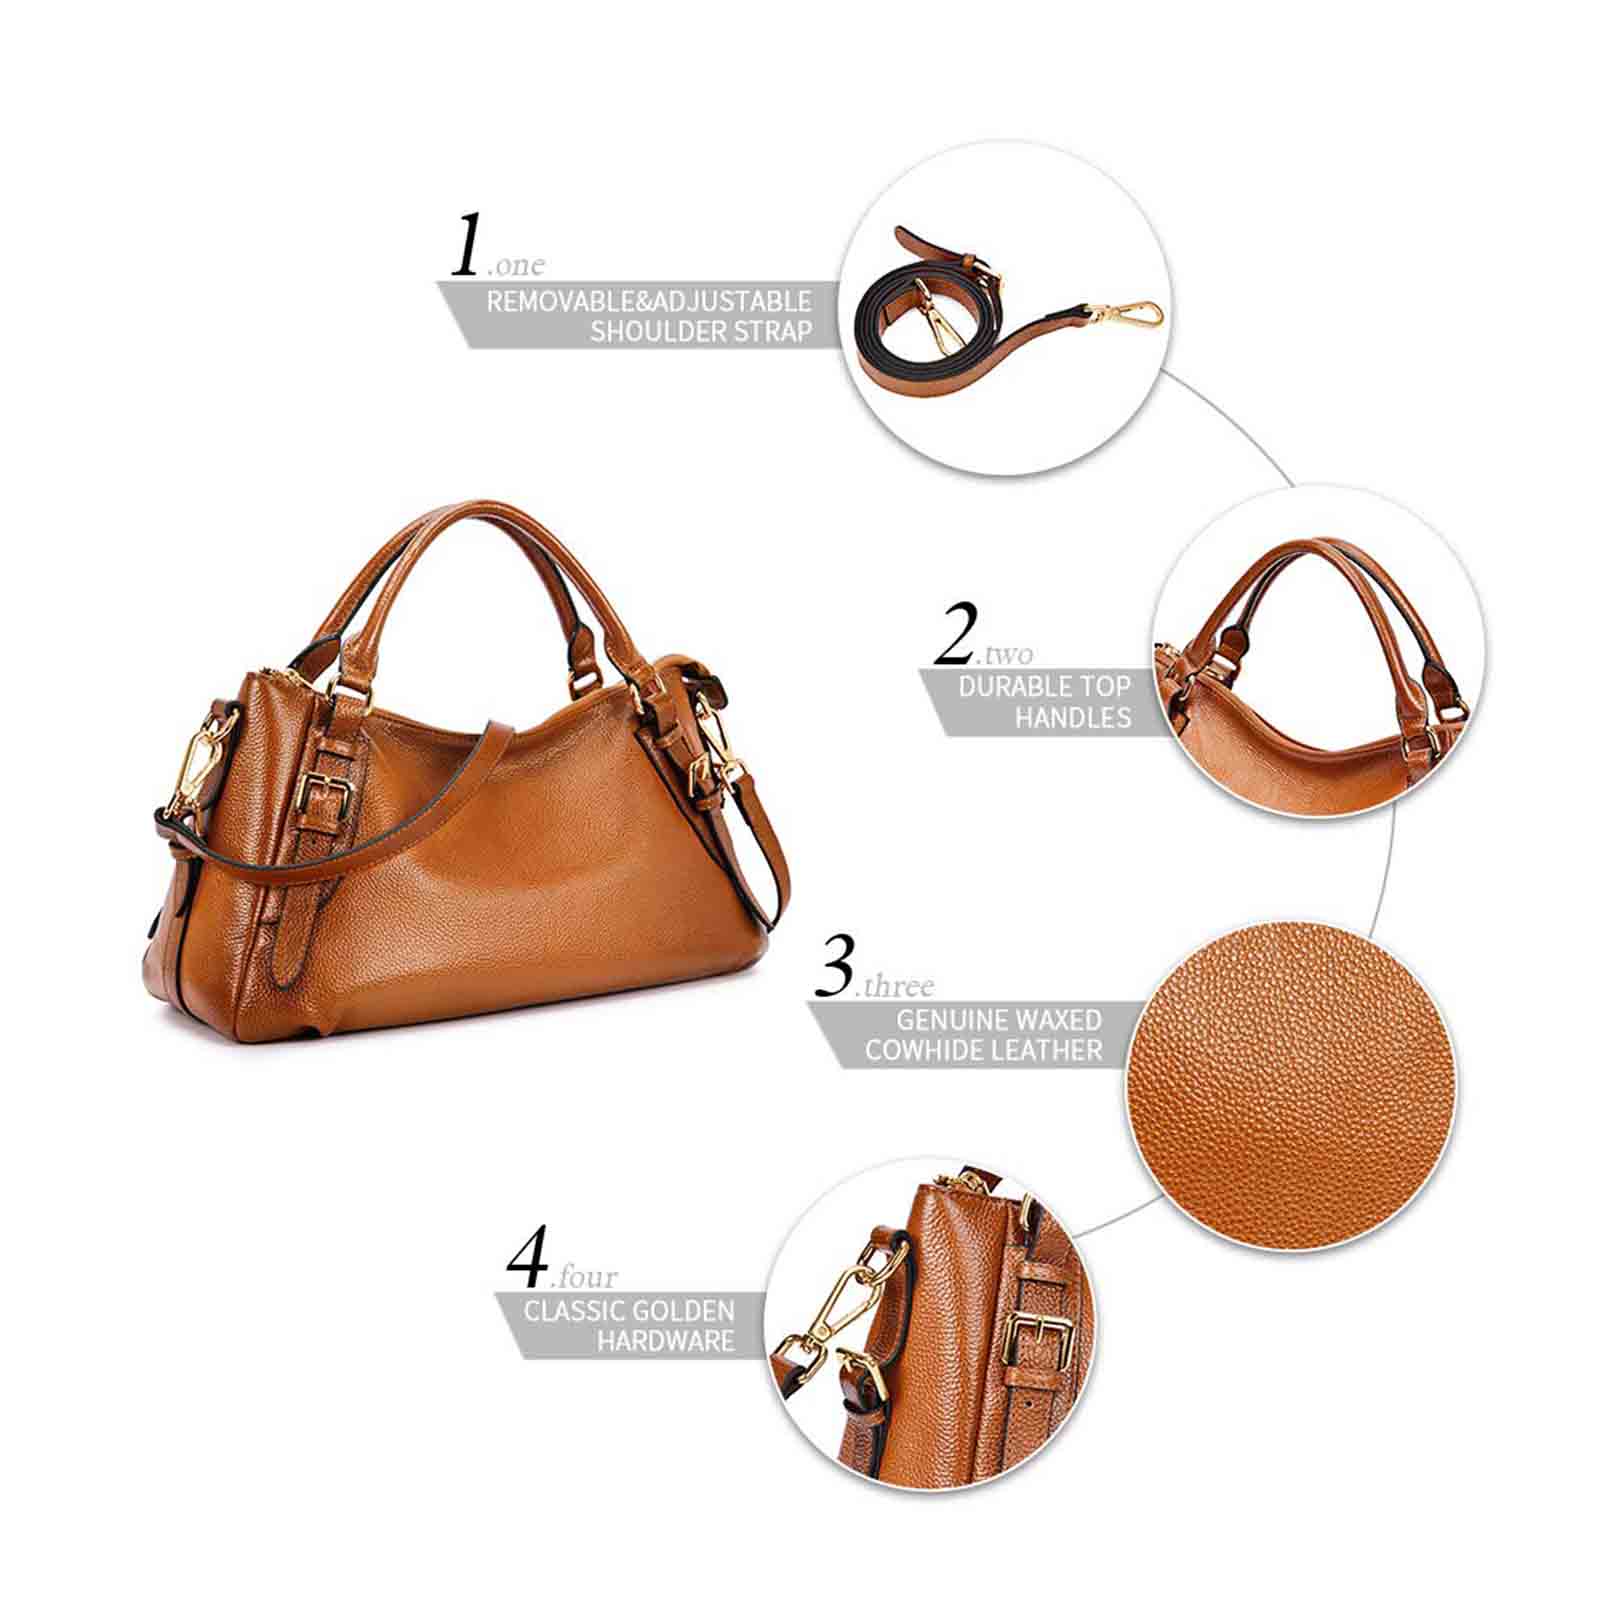 leather handbag for women